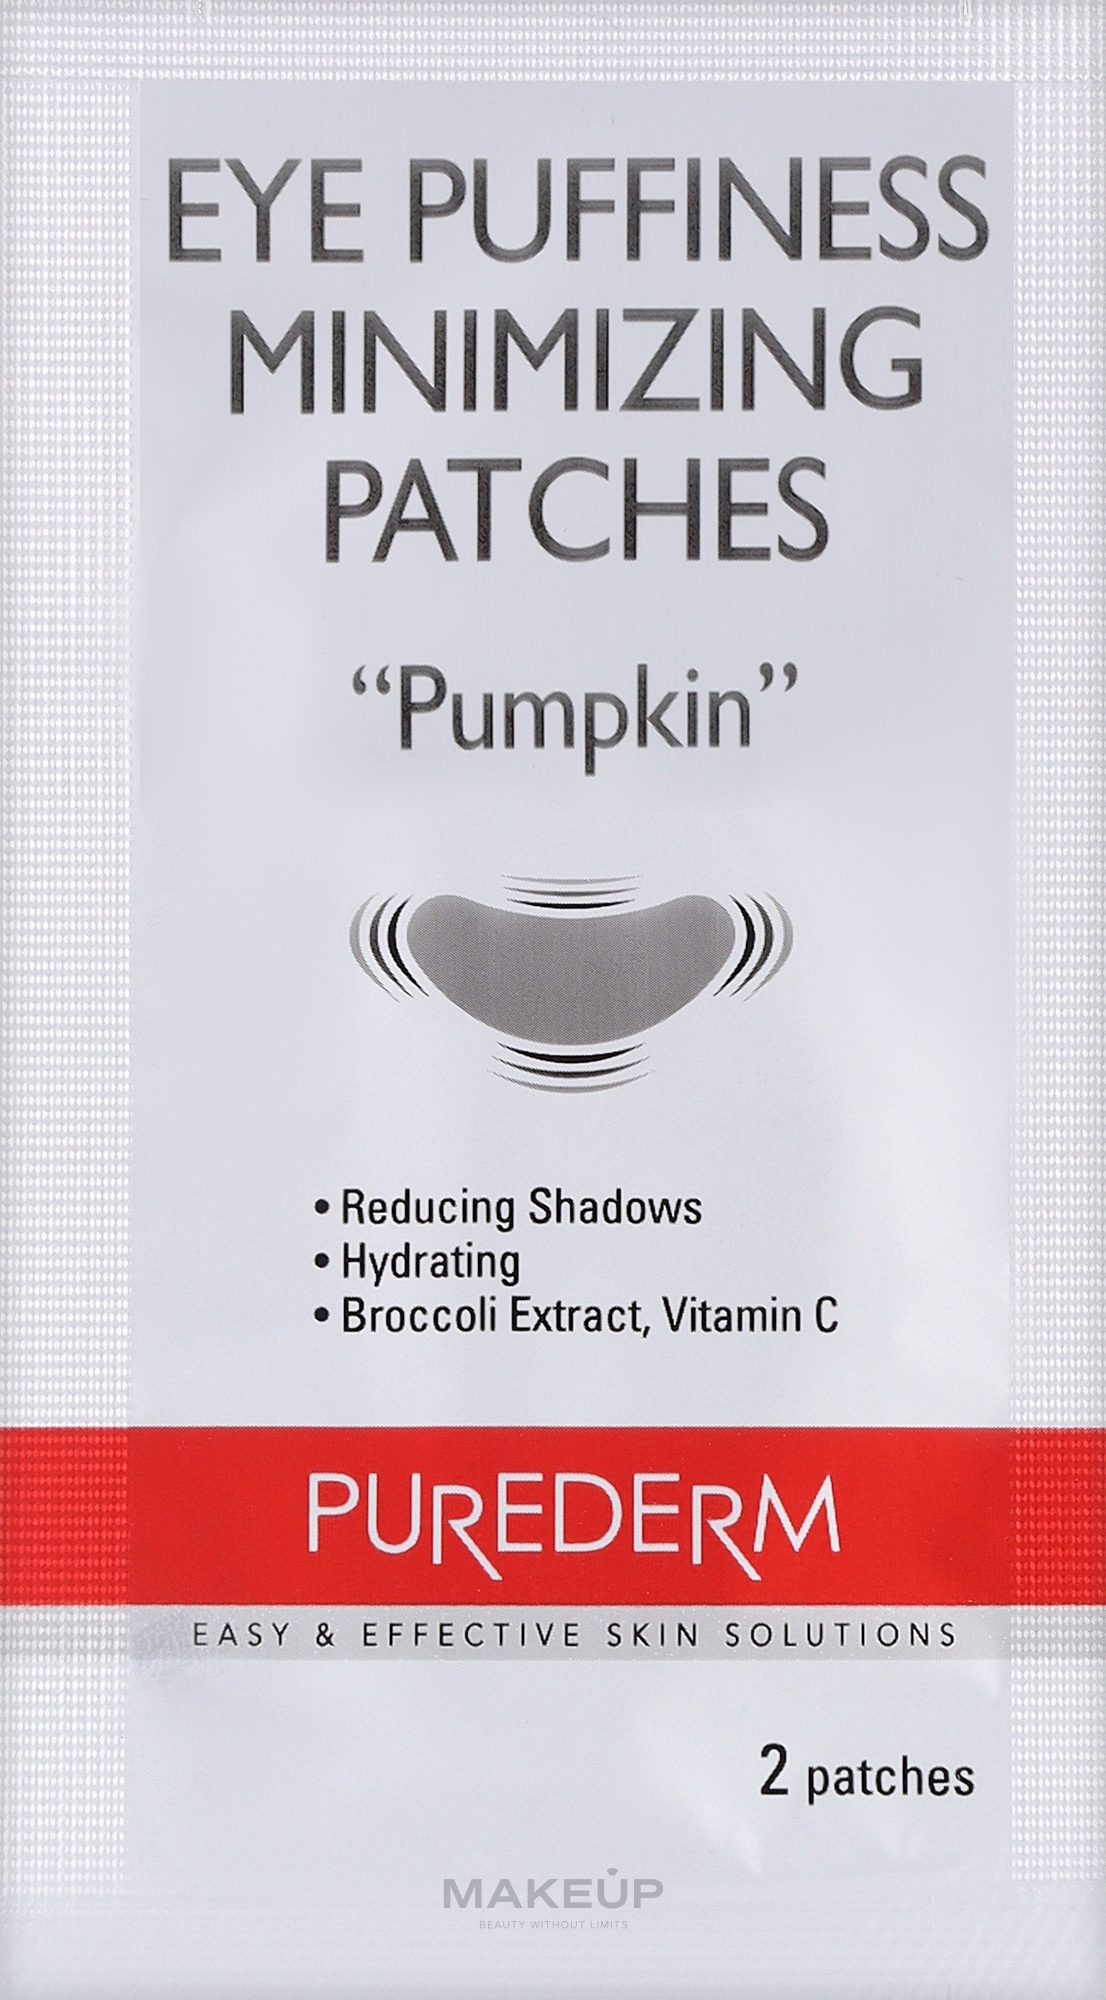 PRZECENA! Płatki na okolice oczu Dynia - Purederm Eye Puffiness Minimizing Patches Pumpkin * — Zdjęcie 6 szt.